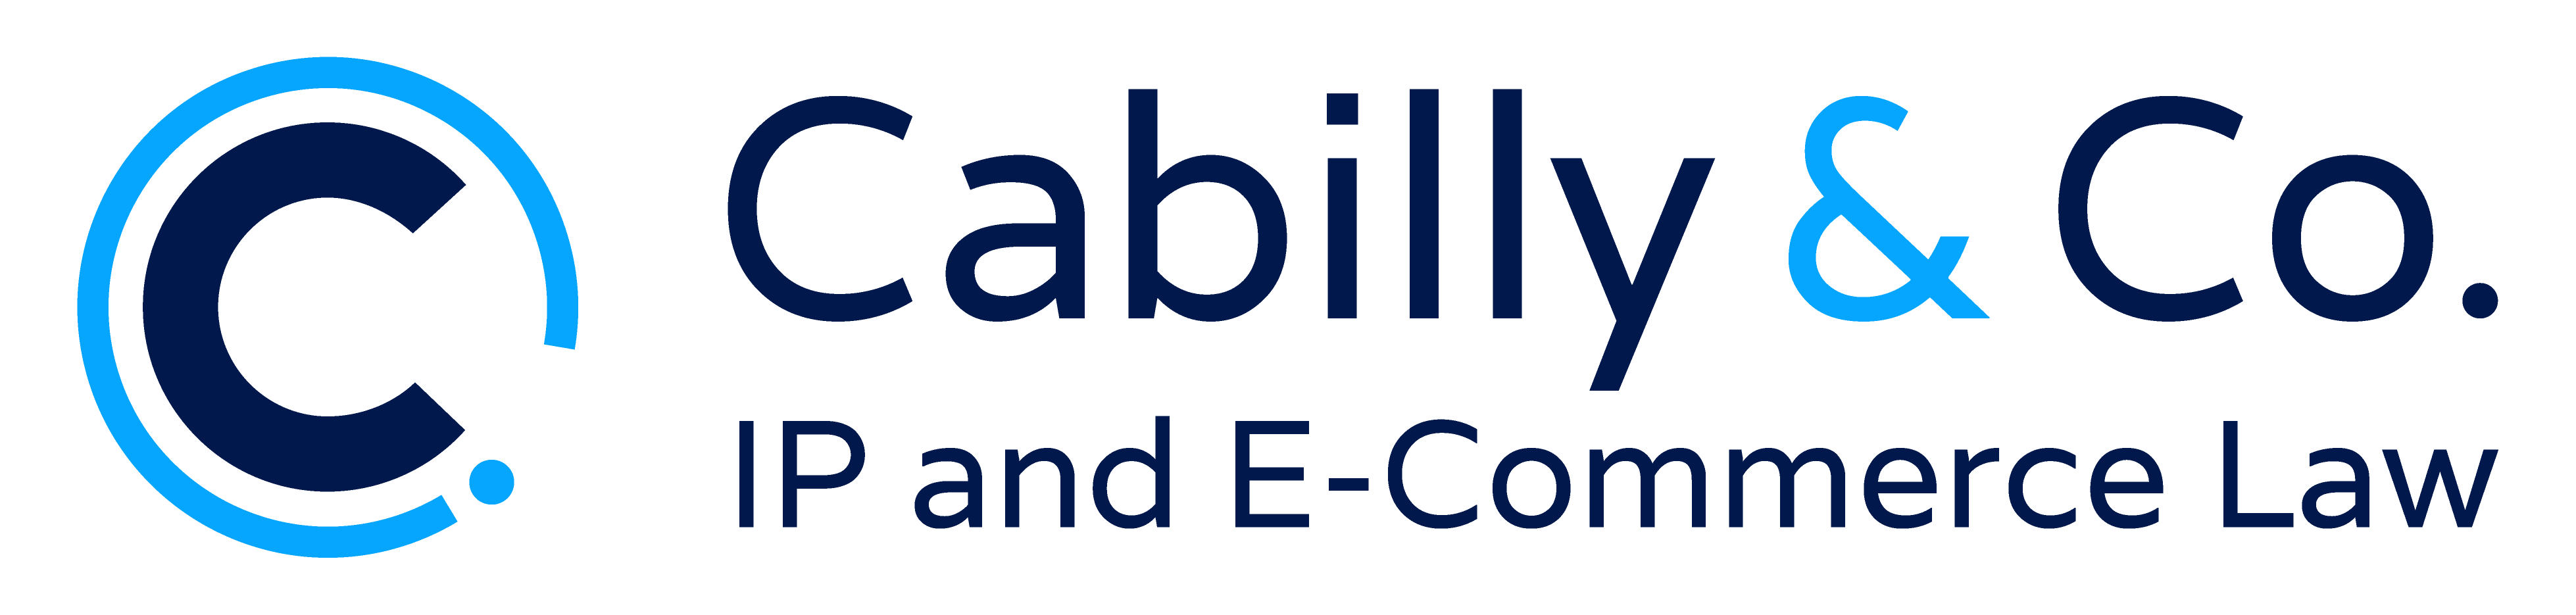 cabilly logo